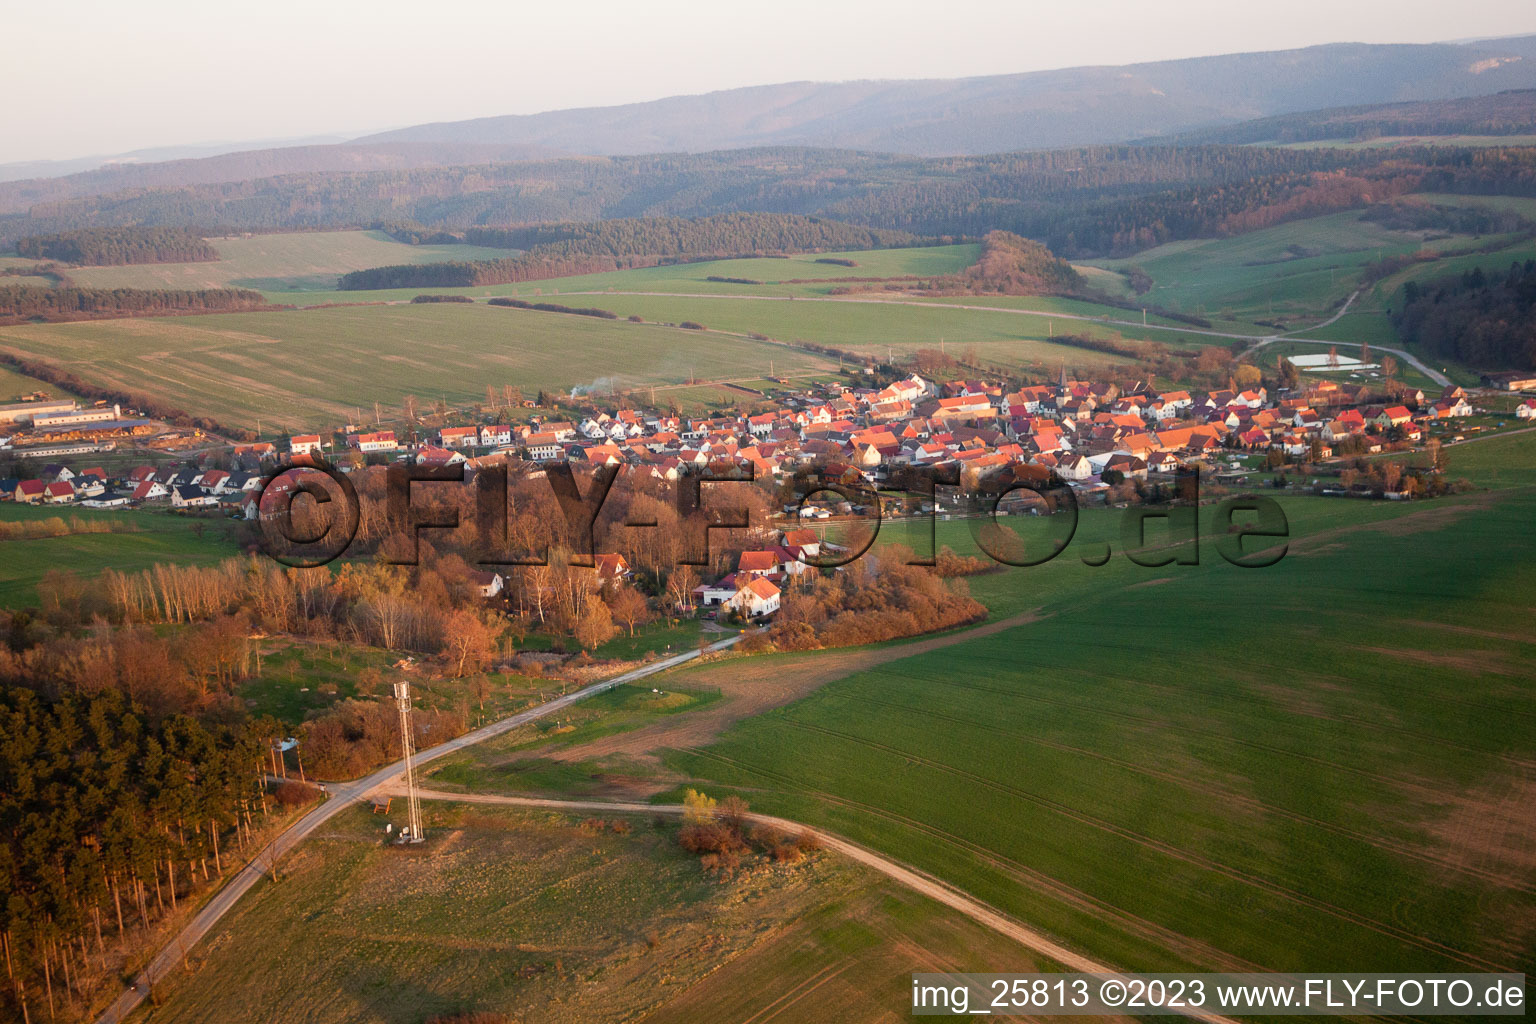 Vue aérienne de Vol cross-country vers le Wachsenburg à Holzhausen dans le département Thuringe, Allemagne